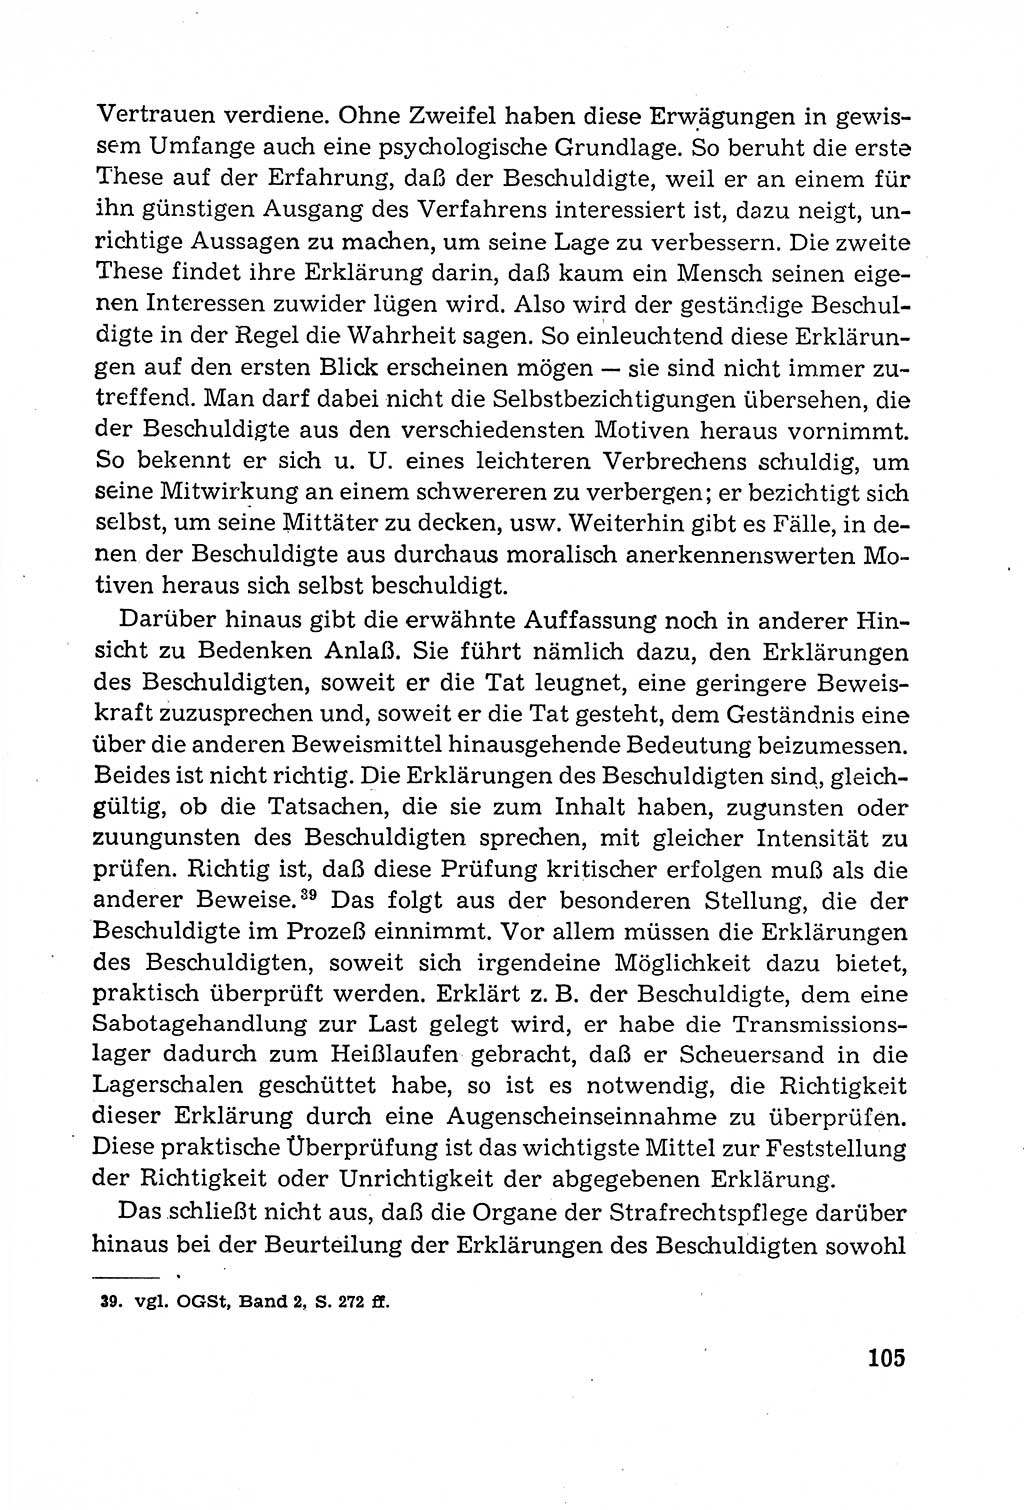 Leitfaden des Strafprozeßrechts der Deutschen Demokratischen Republik (DDR) 1959, Seite 105 (LF StPR DDR 1959, S. 105)